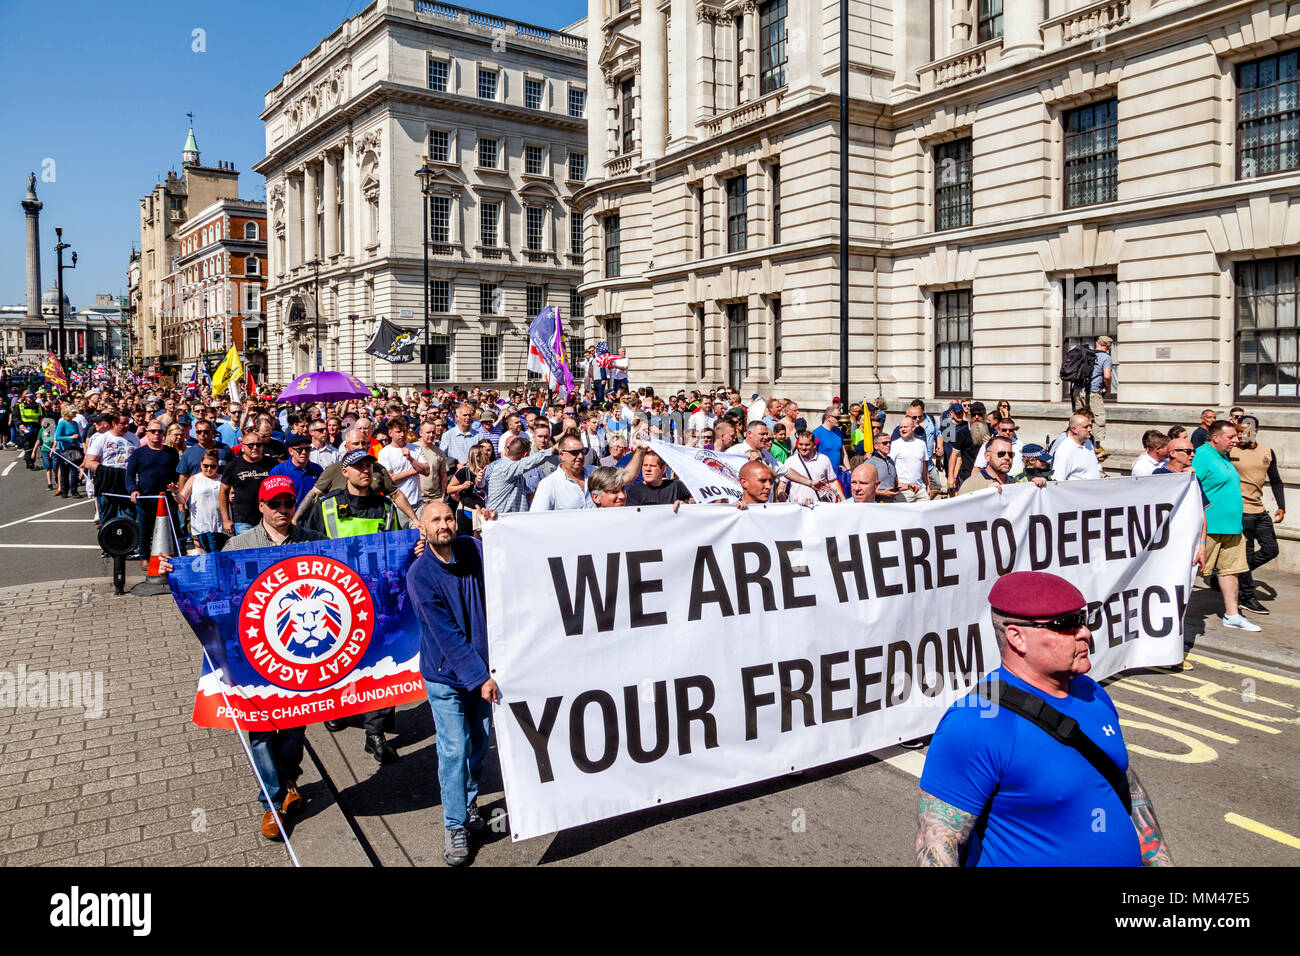 Persone provenienti da tutto il Regno Unito prenderà parte in una libertà di espressione nel rally di Whitehall, organizzata dall'ala destra attivista Tommy Robinson, London, Regno Unito Foto Stock